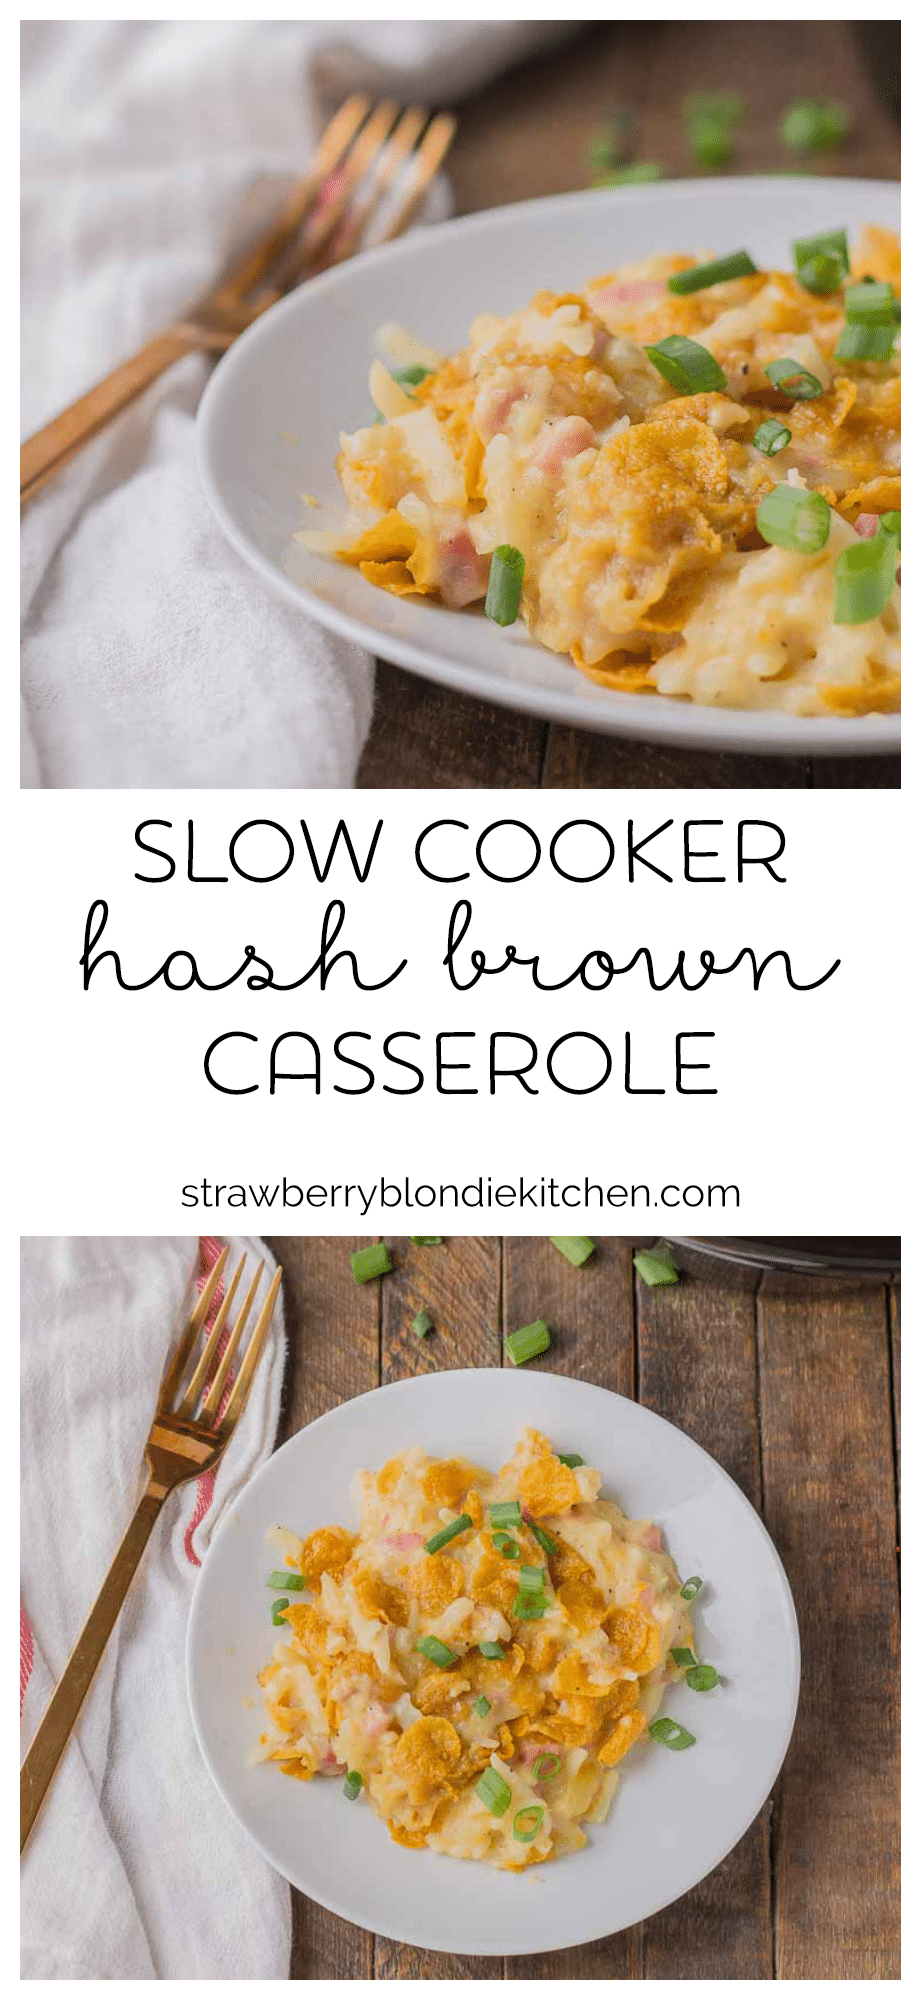 Slow Cooker Hash Brown Casserole - Strawberry Blondie Kitchen